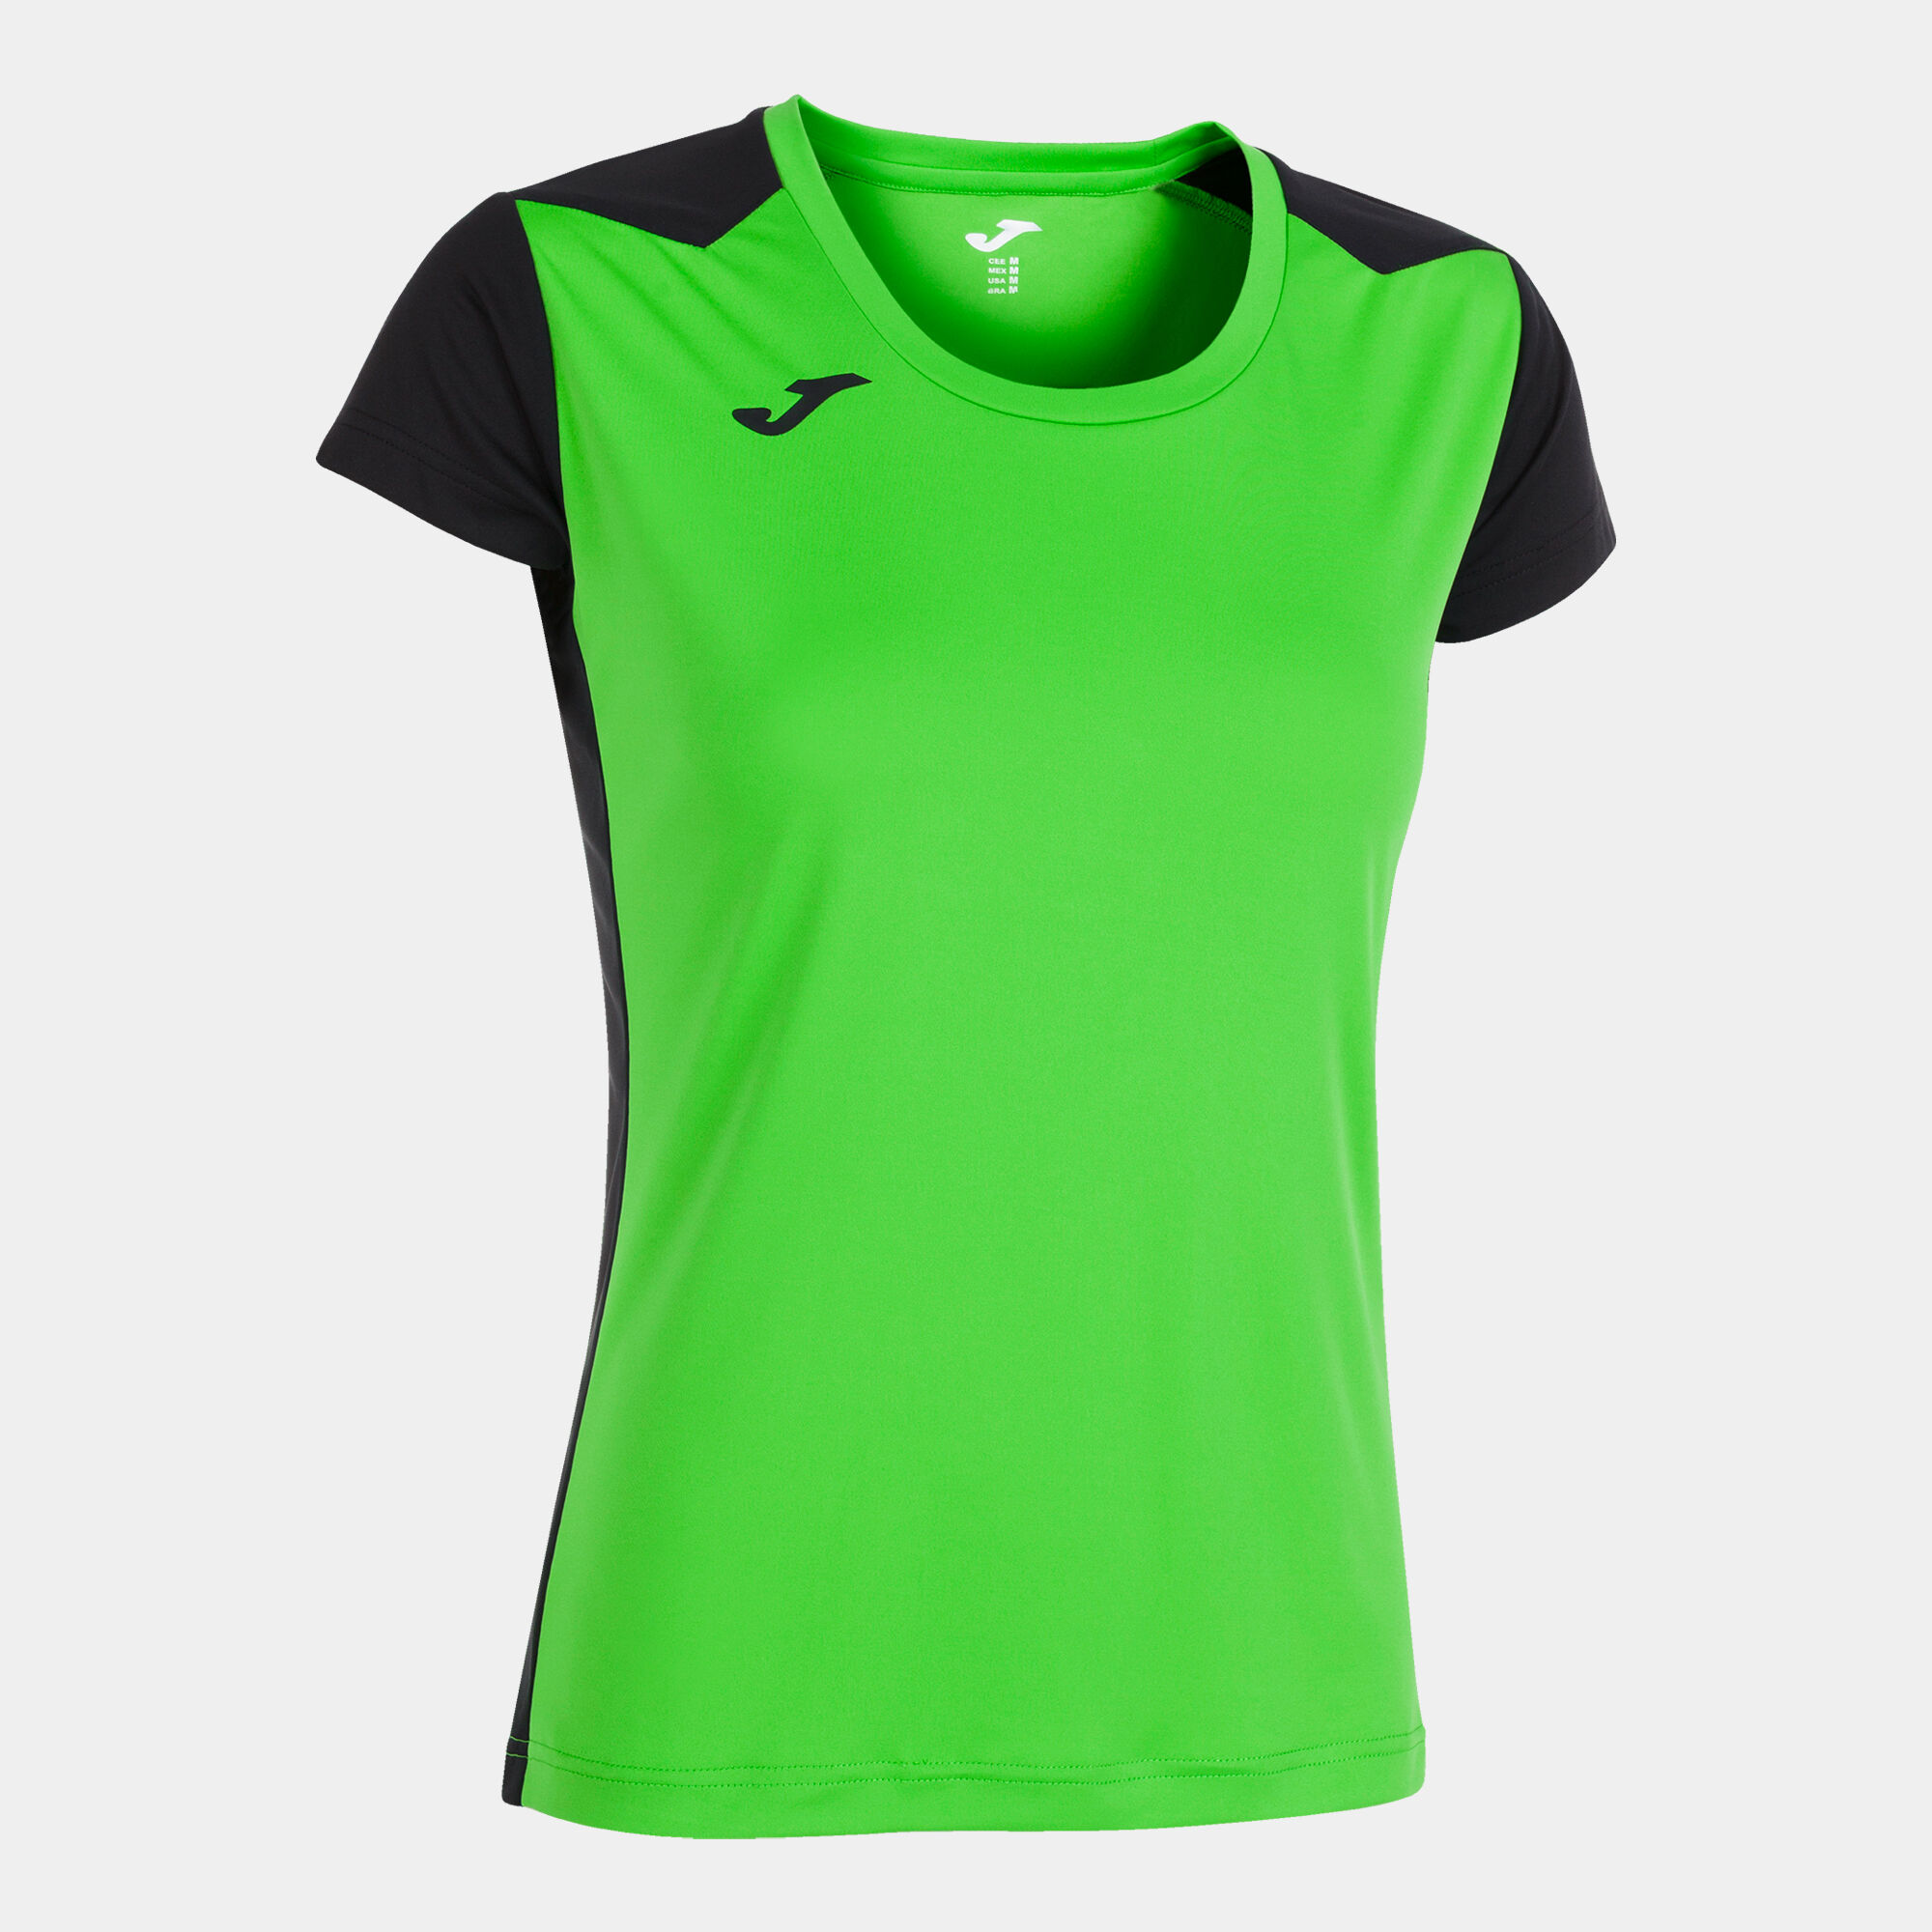 Shirt short sleeve woman Record II fluorescent green black